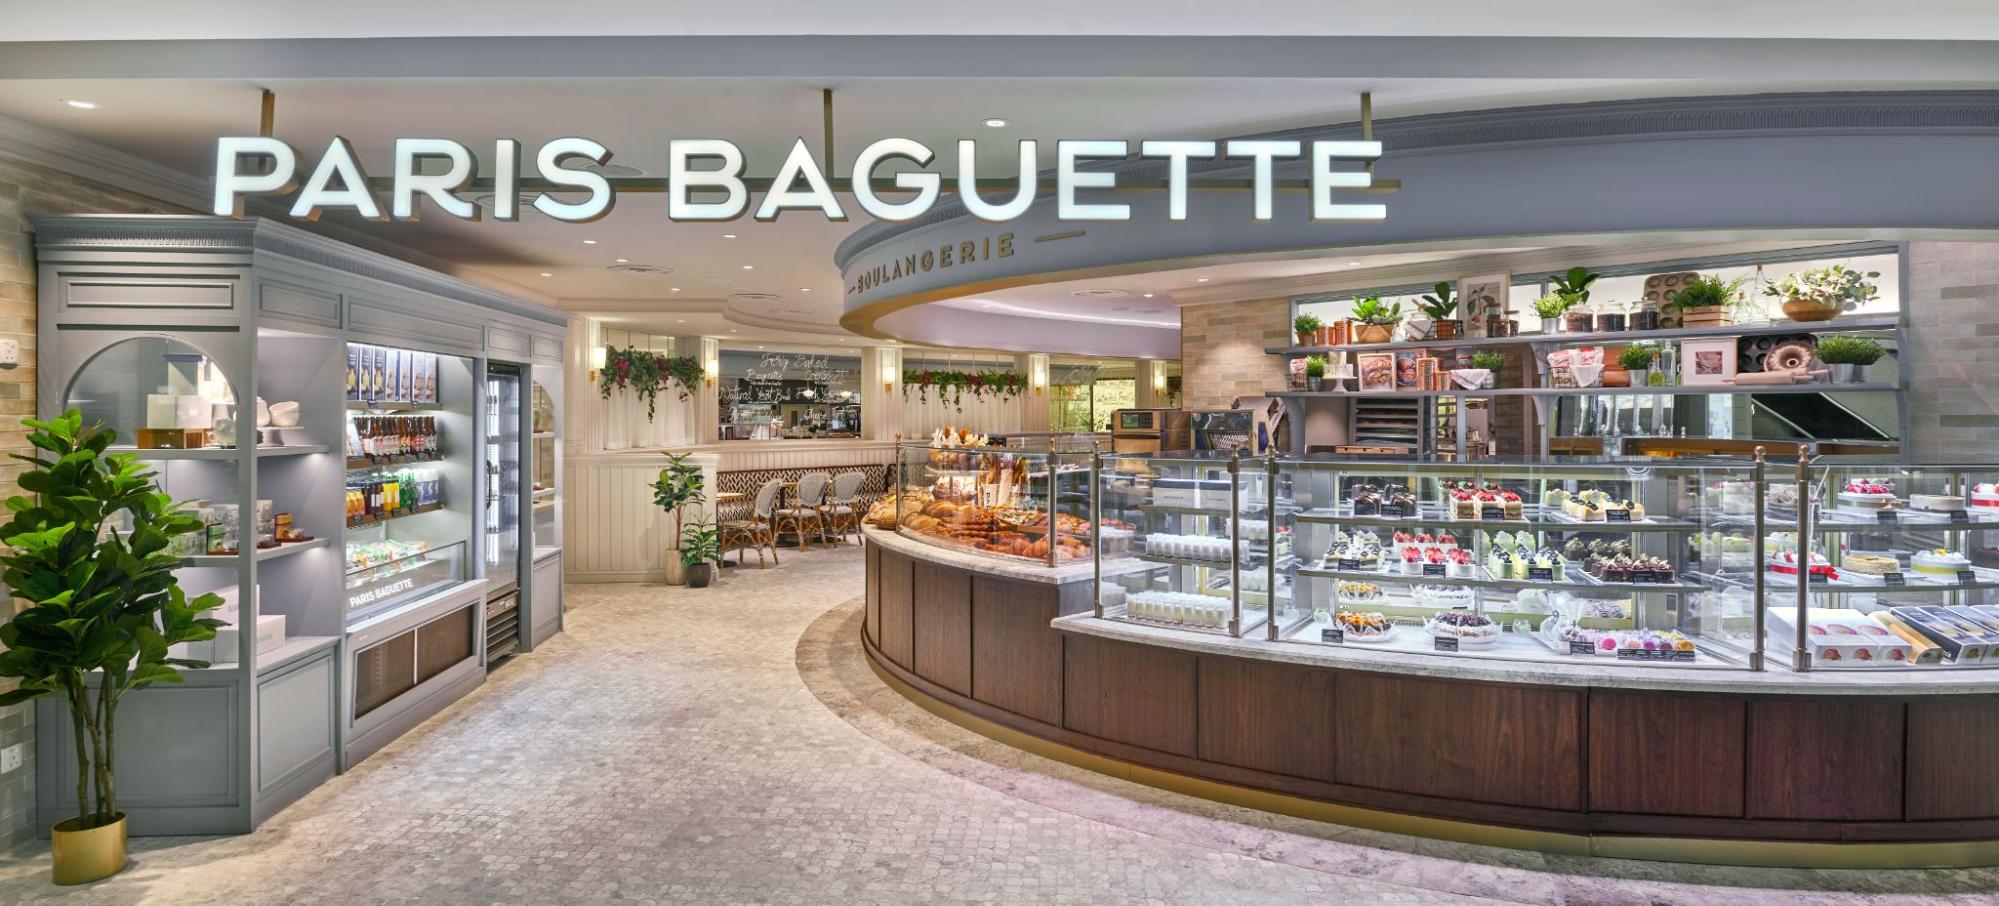 Paris Baguette - store